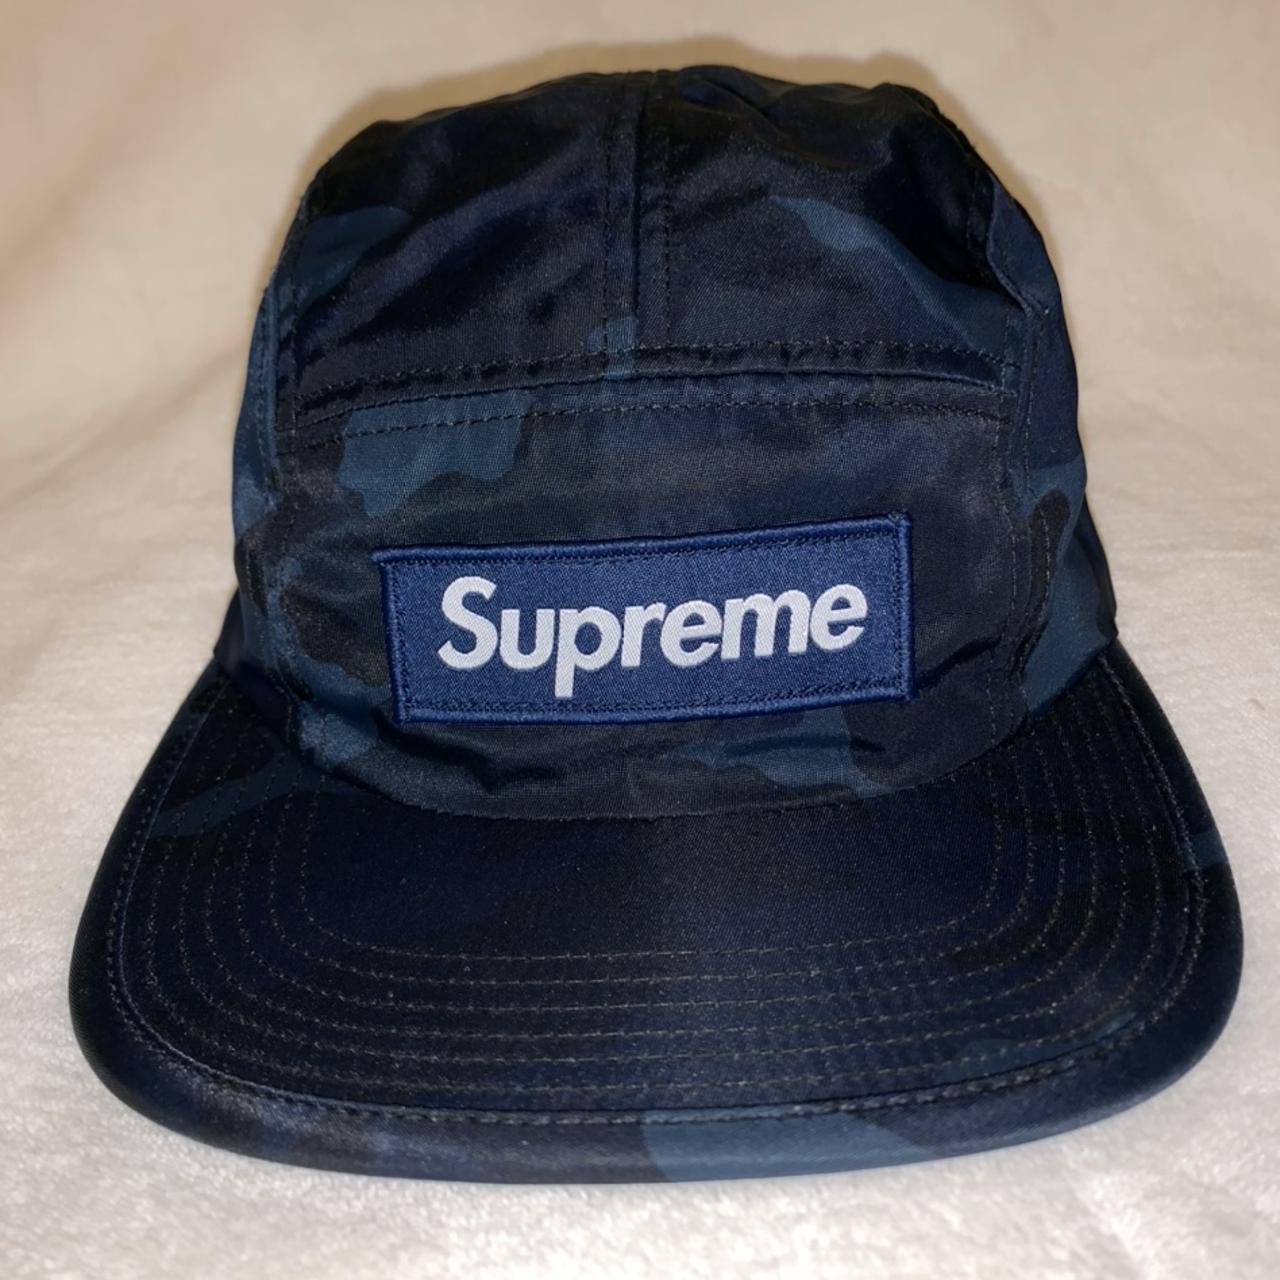 Supreme, Accessories, Authentic Supreme Camo 5 Panel Hat